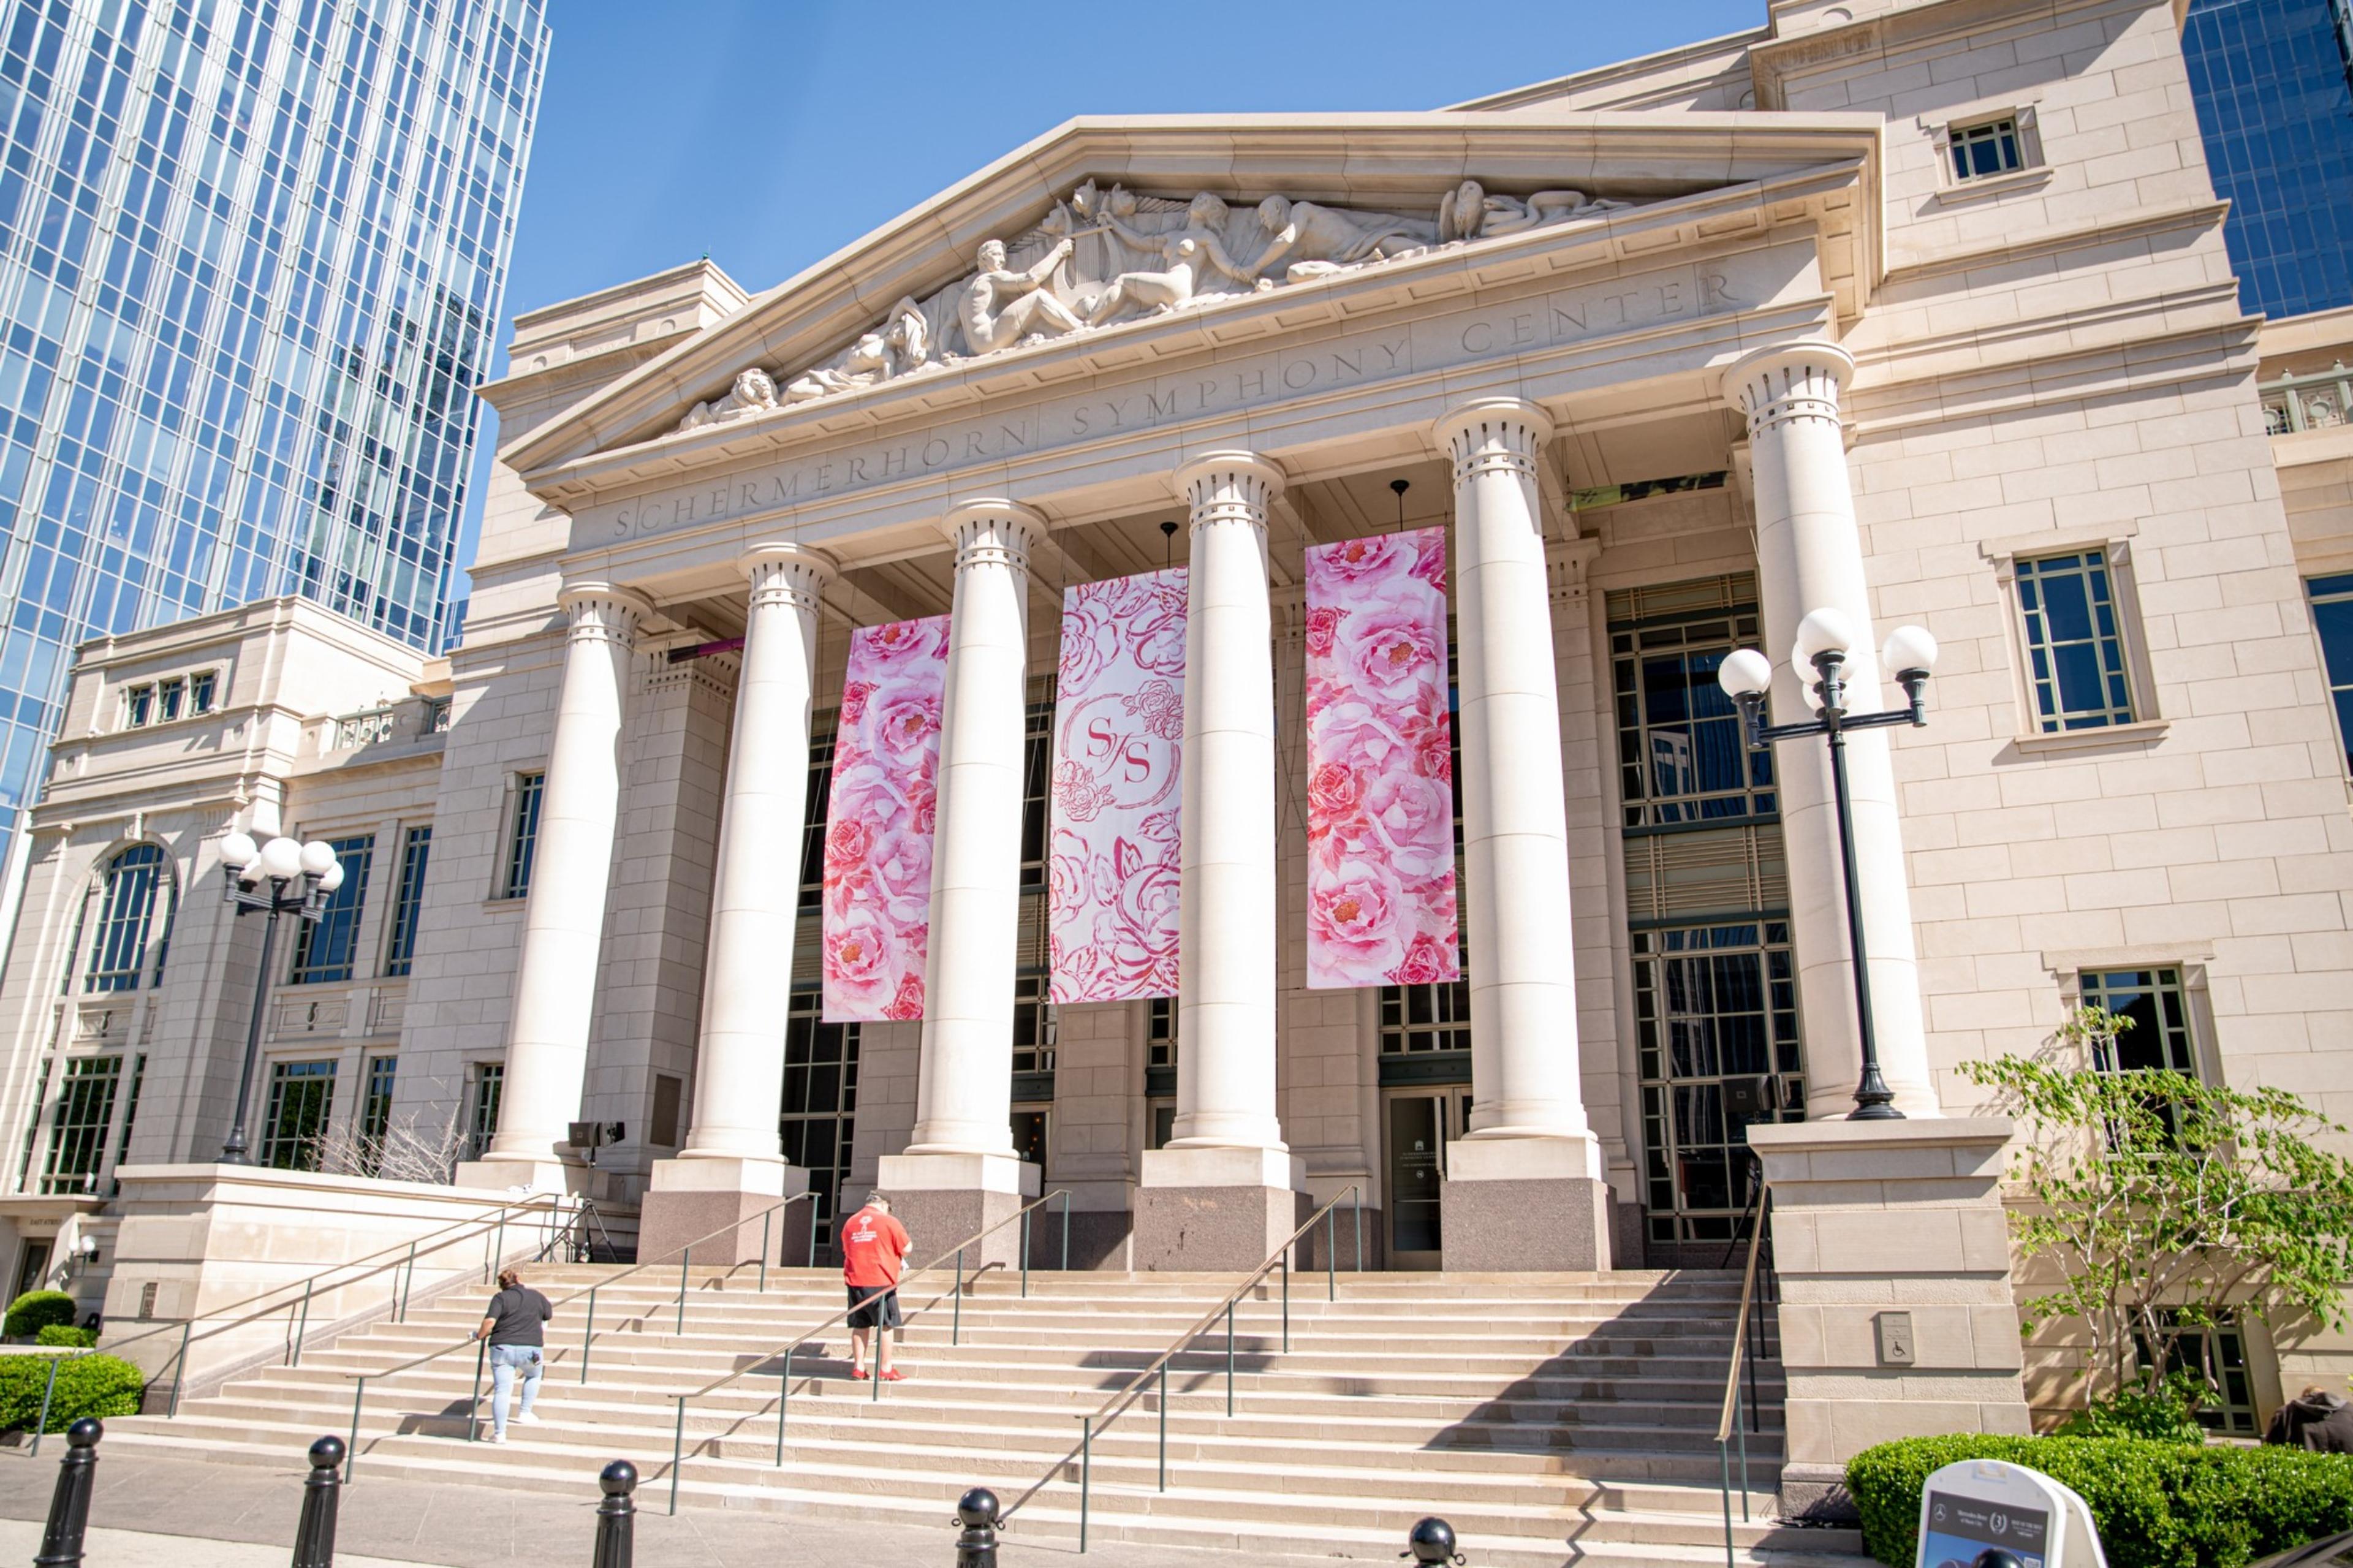 Nashville Symphony Schermerhorn Symphony Center